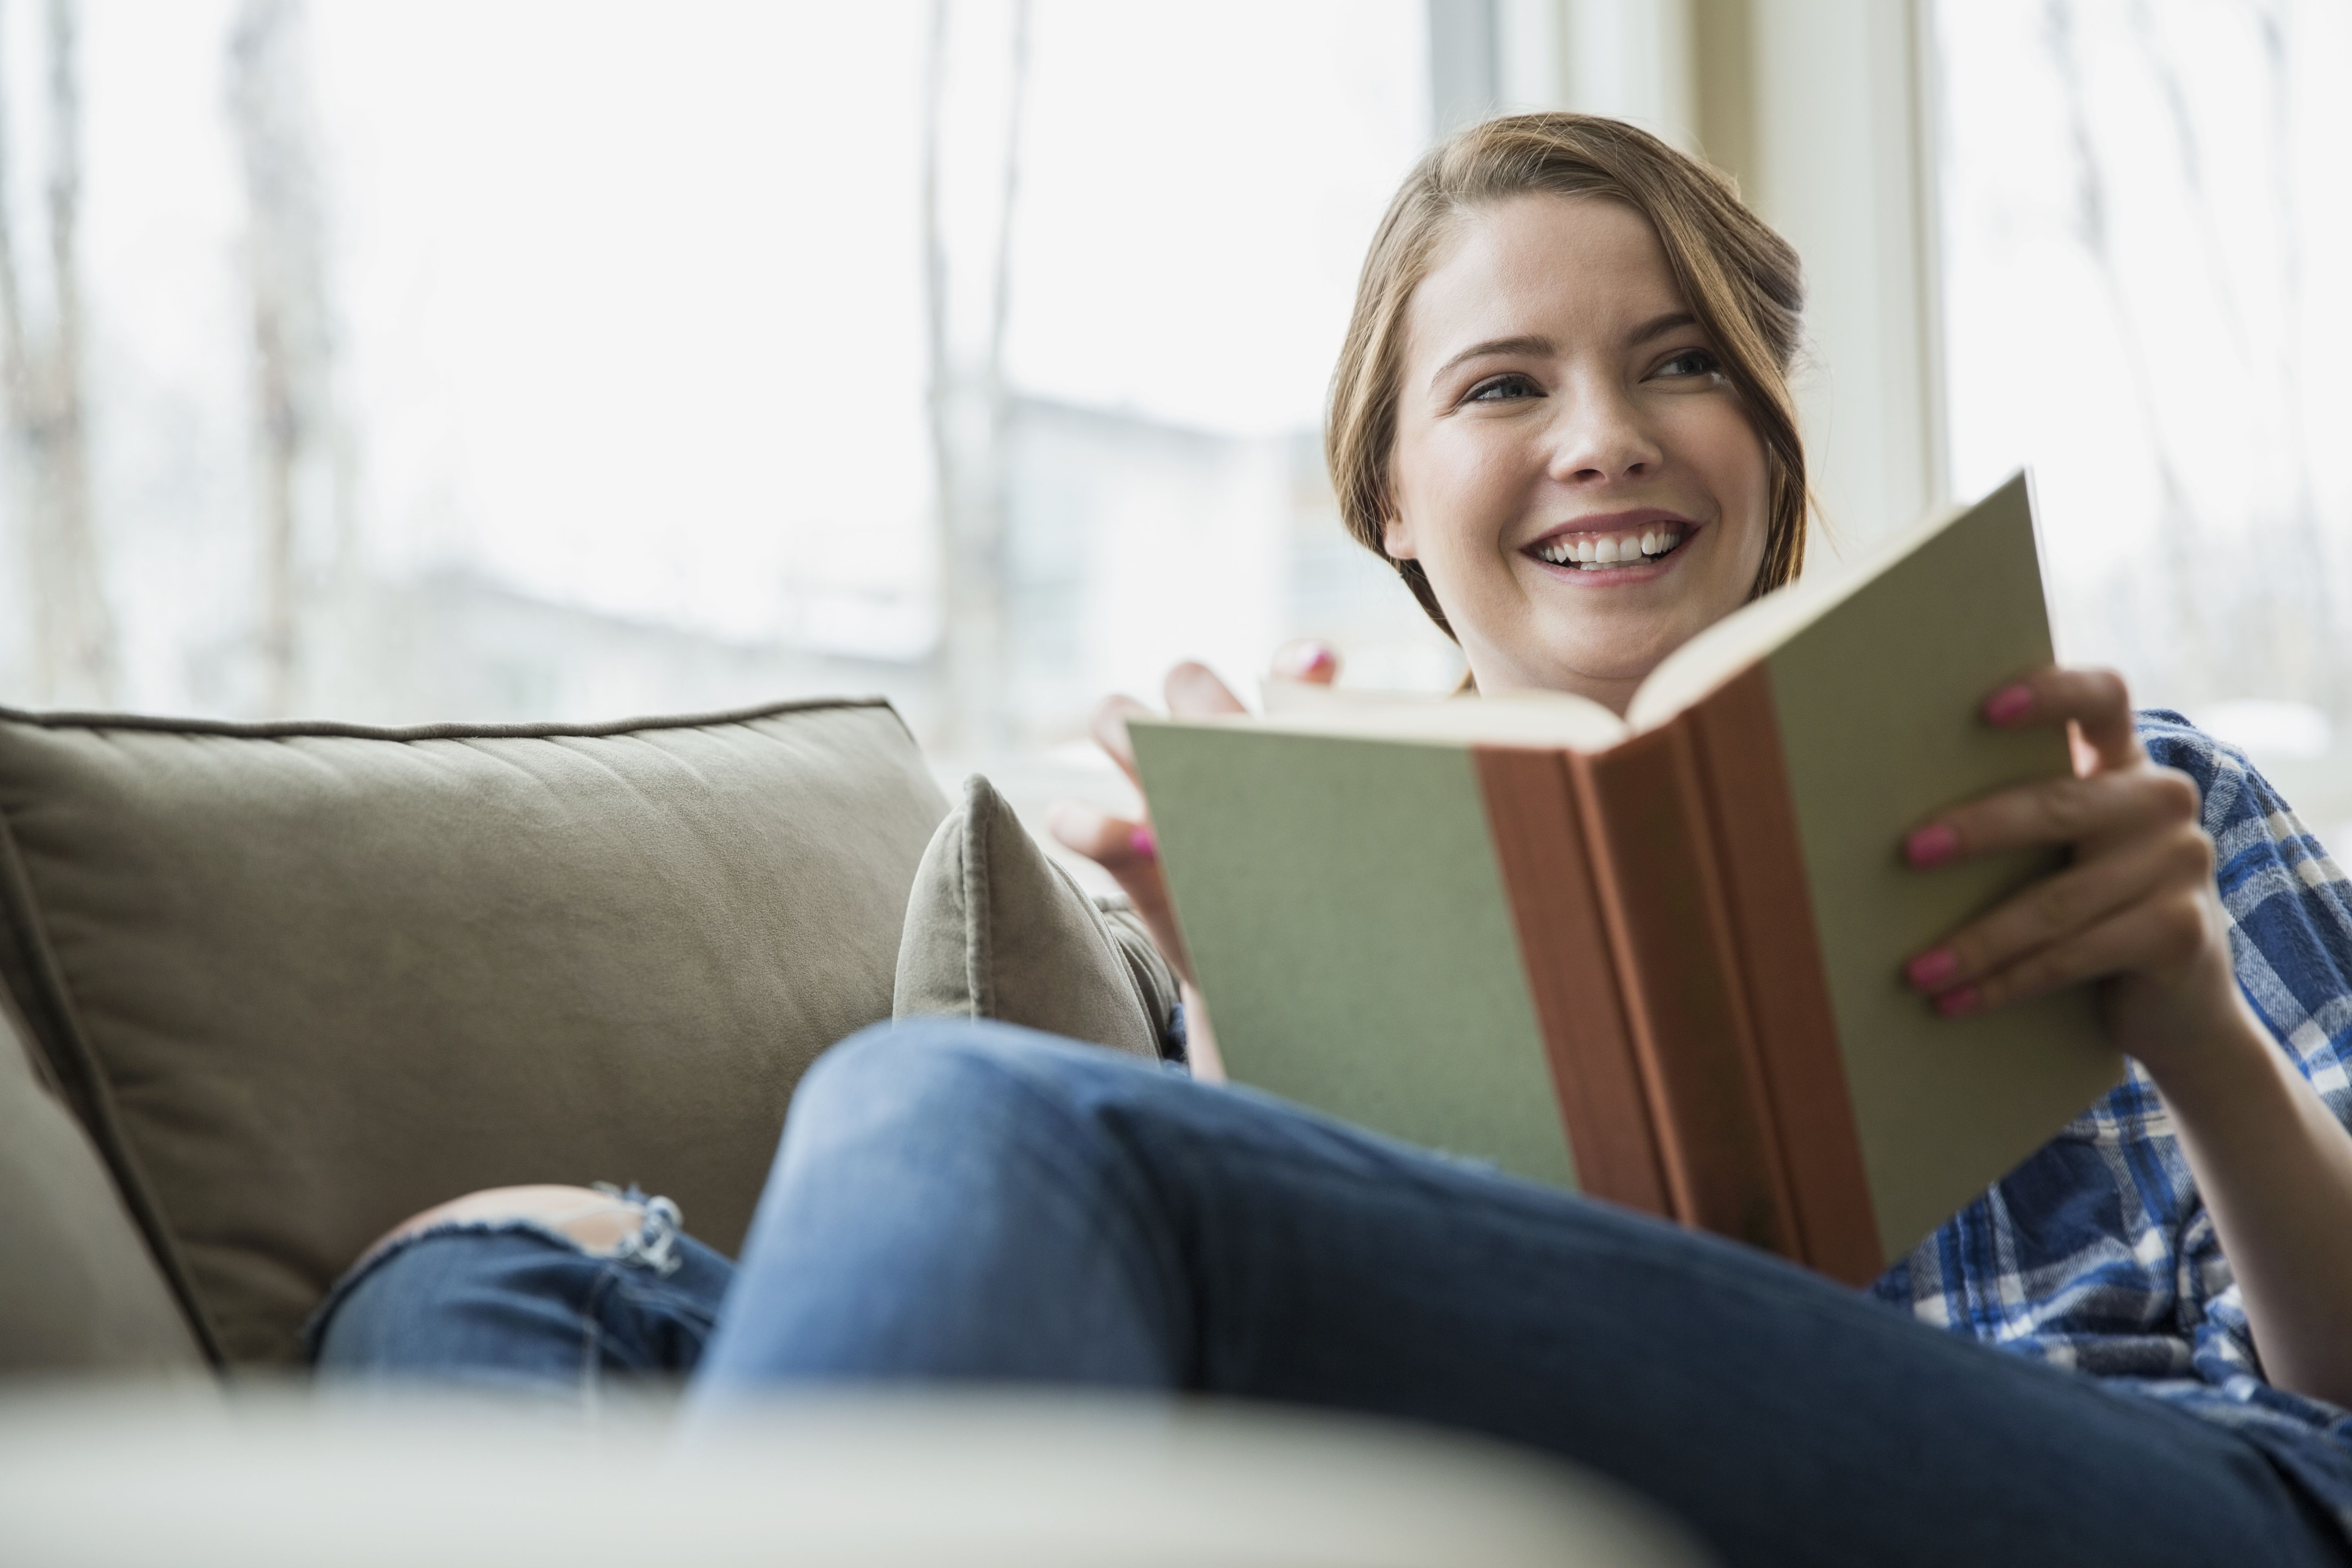 She s reading now. Женщина с книгой. Чтение книг. Довольная женщина с книгой. Читает и улыбается.